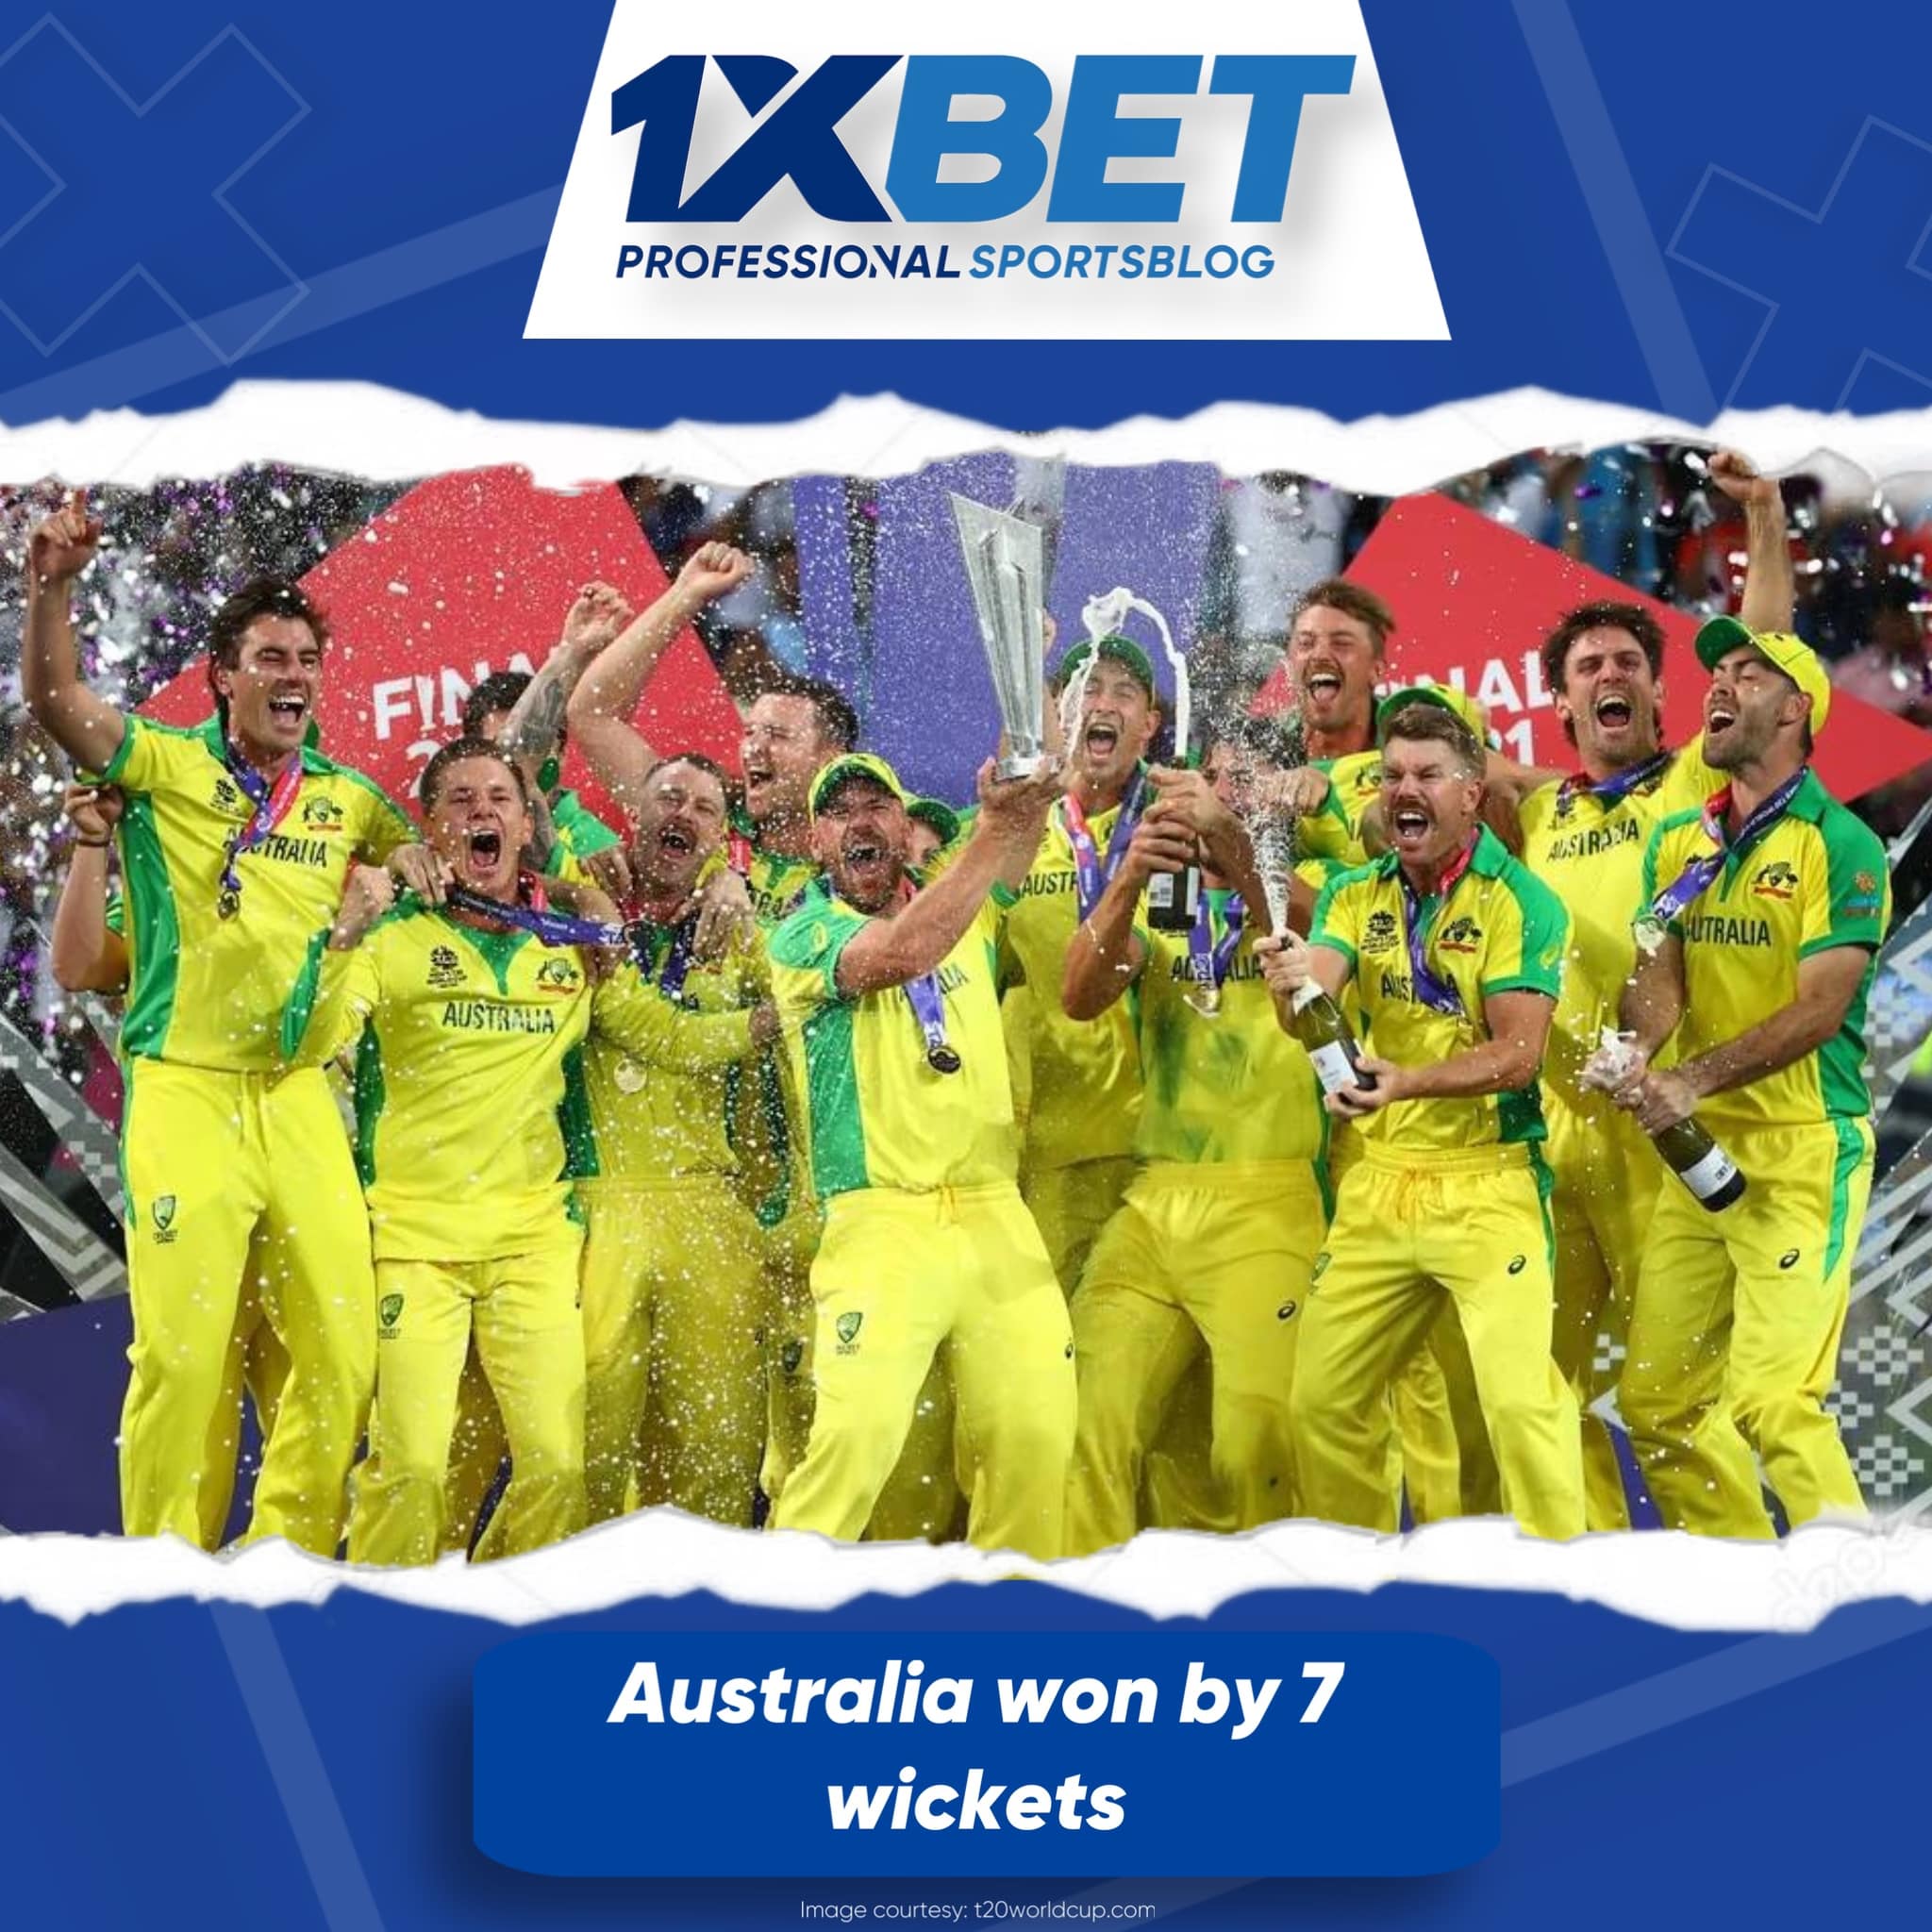 Australia won by 7 wickets